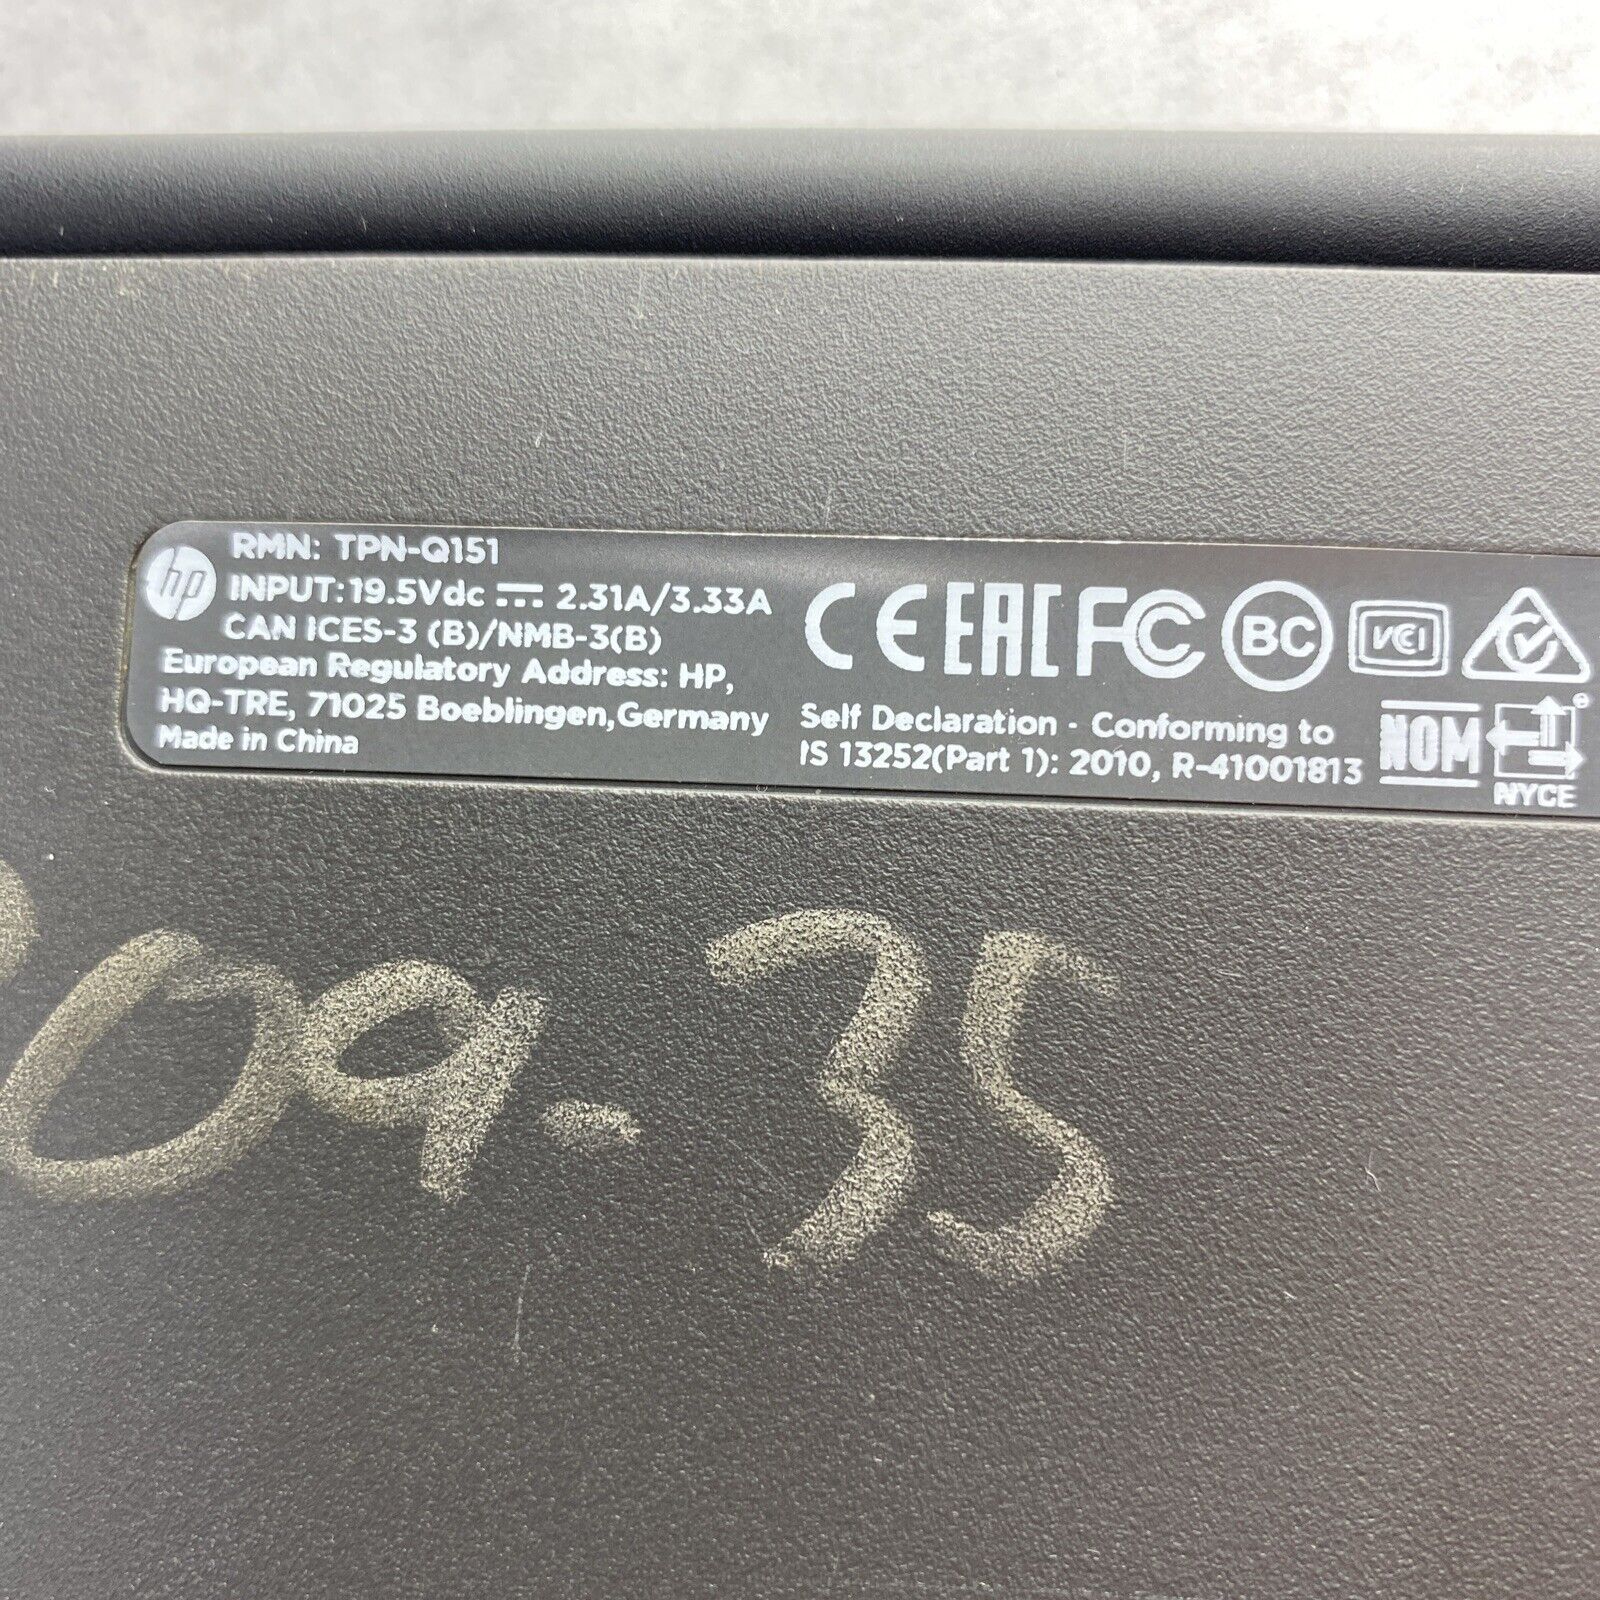 HP Chromebook 11 G4 EE Intel Celeron N2840 2.16GHz 4GB RAM 16GB SSD W/AC Adapter